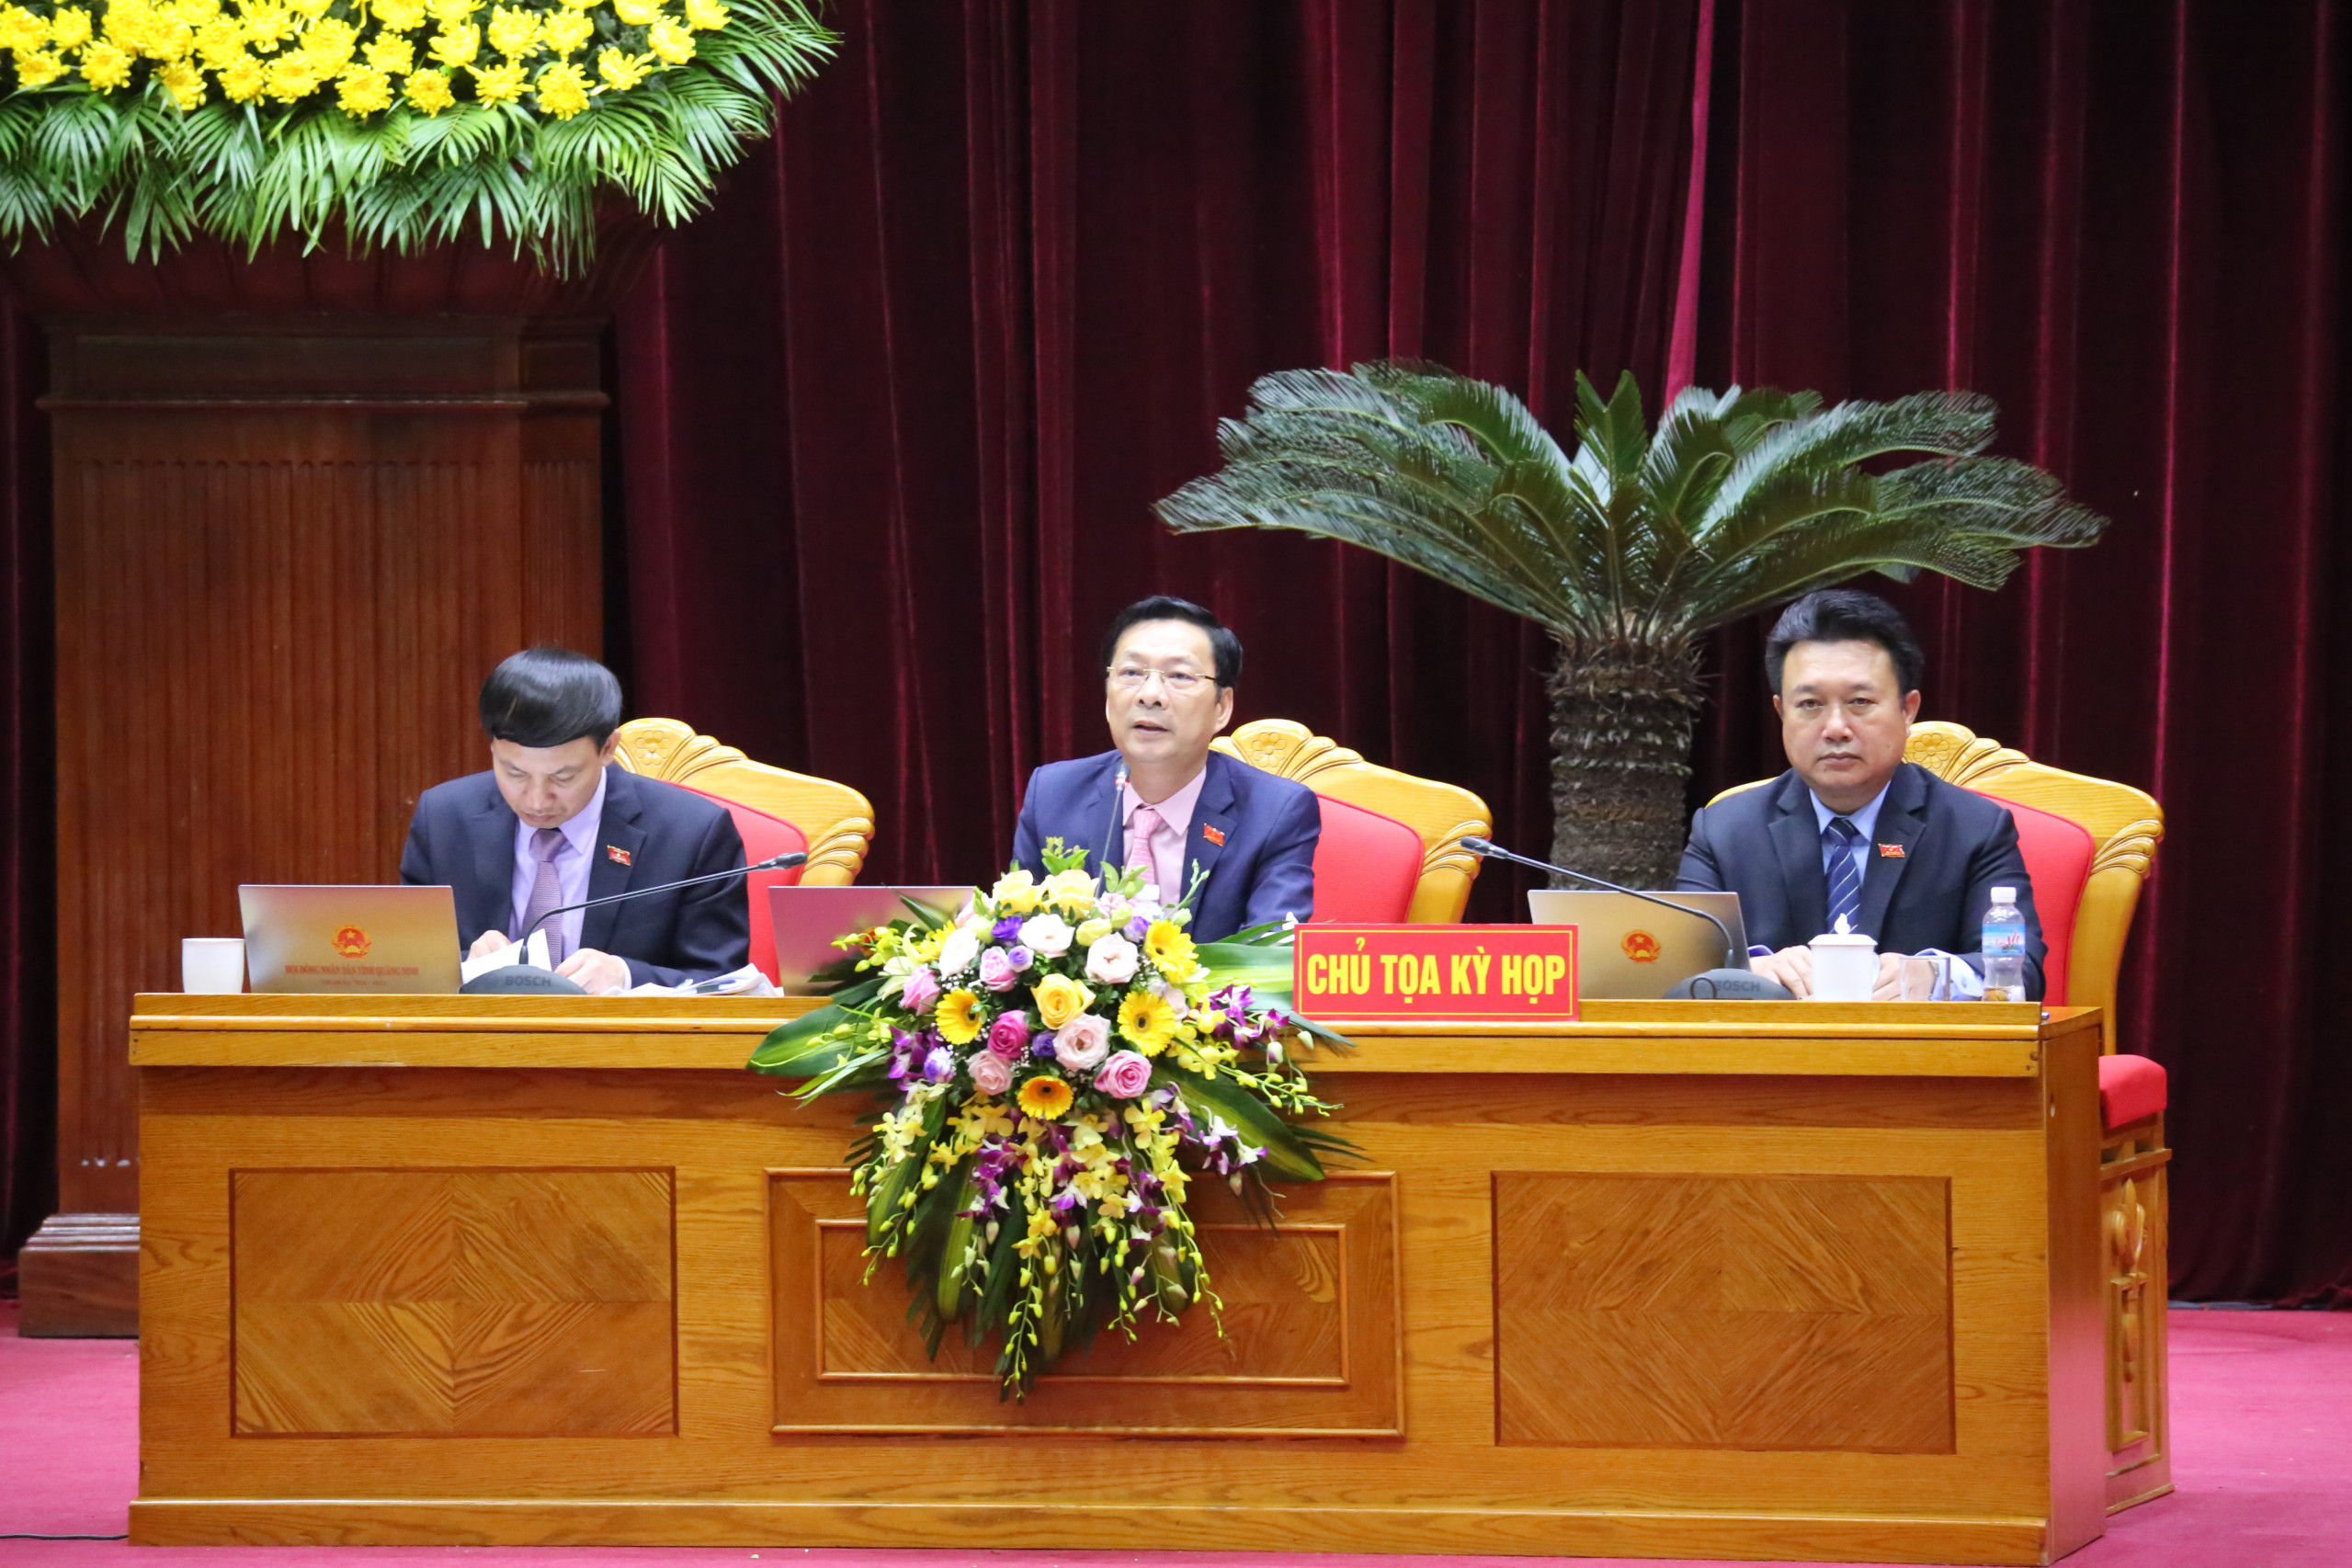 Đồng chí Nguyễn Văn Đọc, Bí thư Tỉnh ủy, Chủ tịch HĐND tỉnh, Chủ tọa kỳ họp, phát biểu kết luận phiên thảo luận tại hội trường.